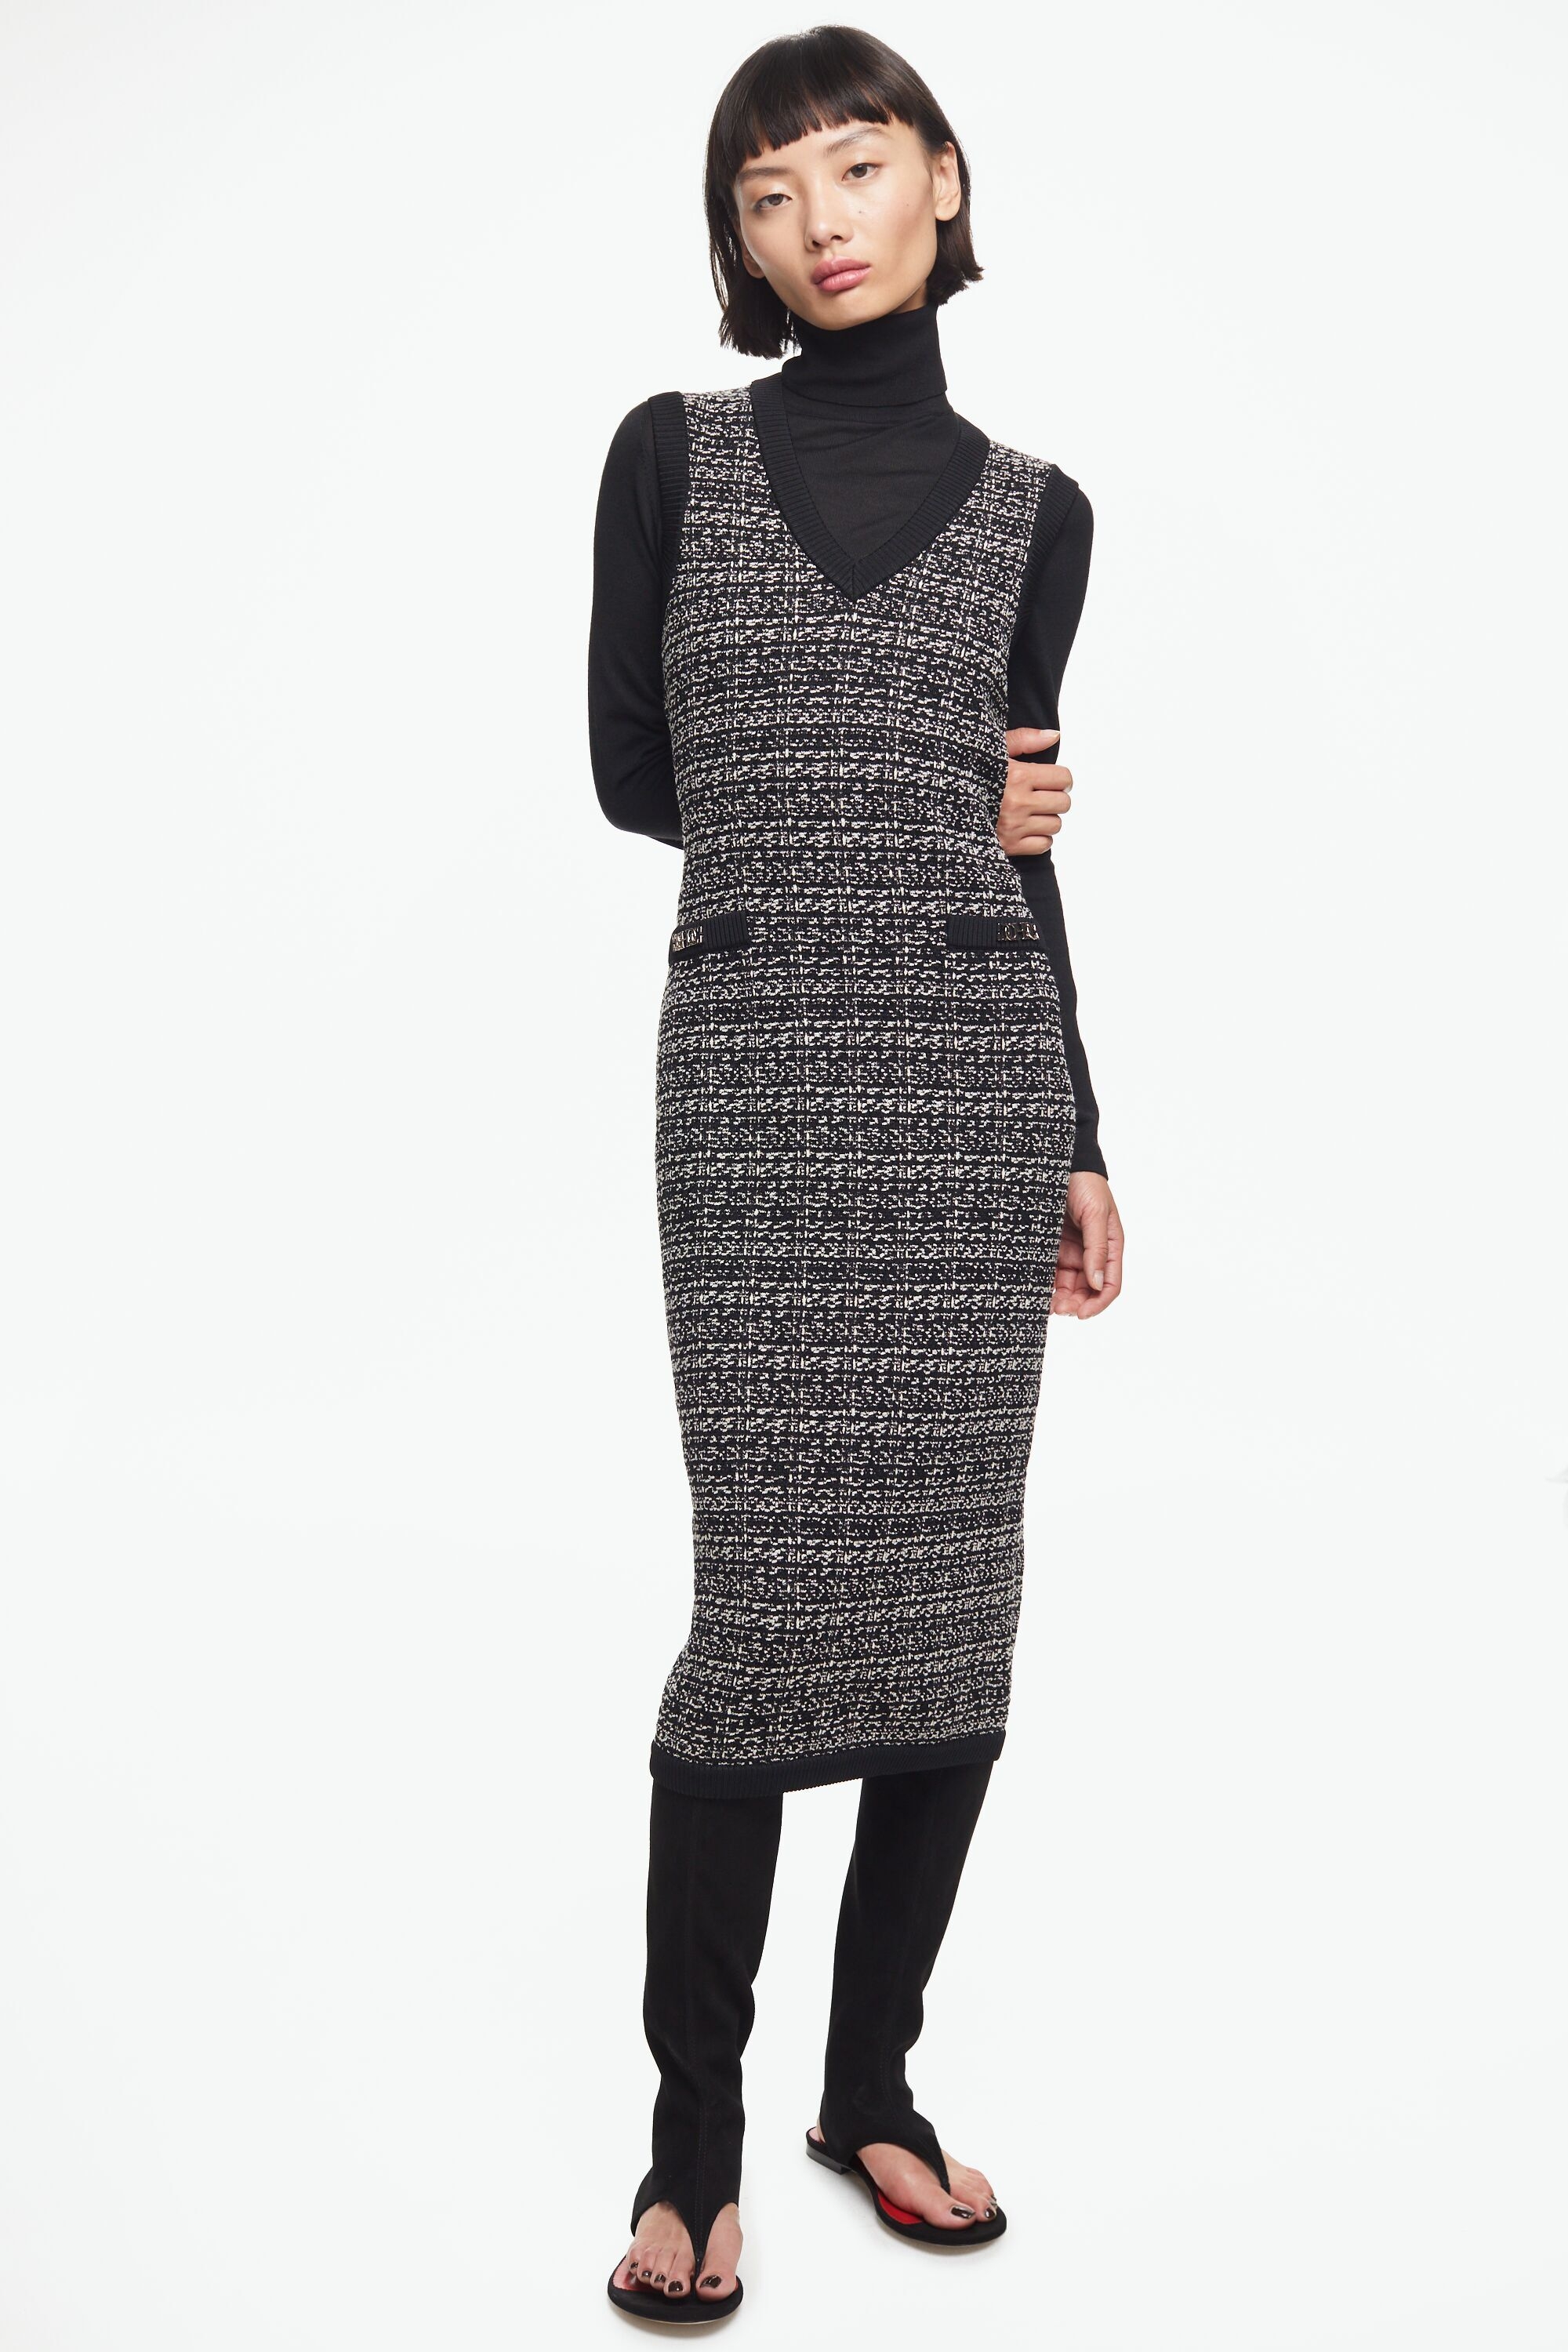 Straight-fit jacquard knit dress